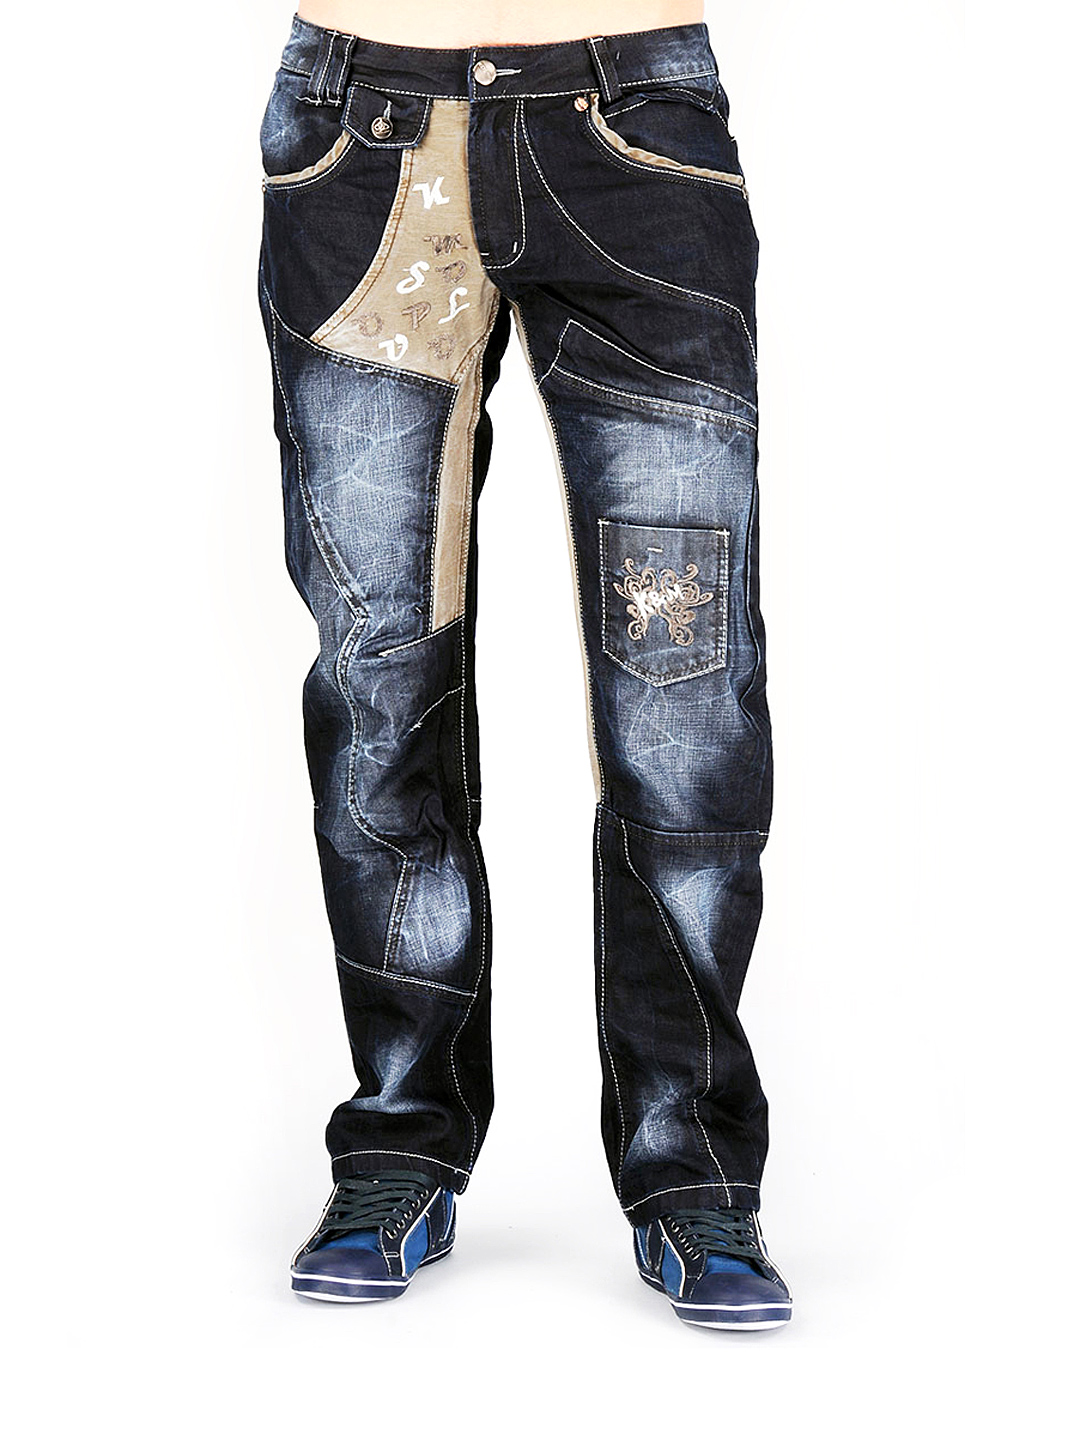 Комбинированные джинсы мужские